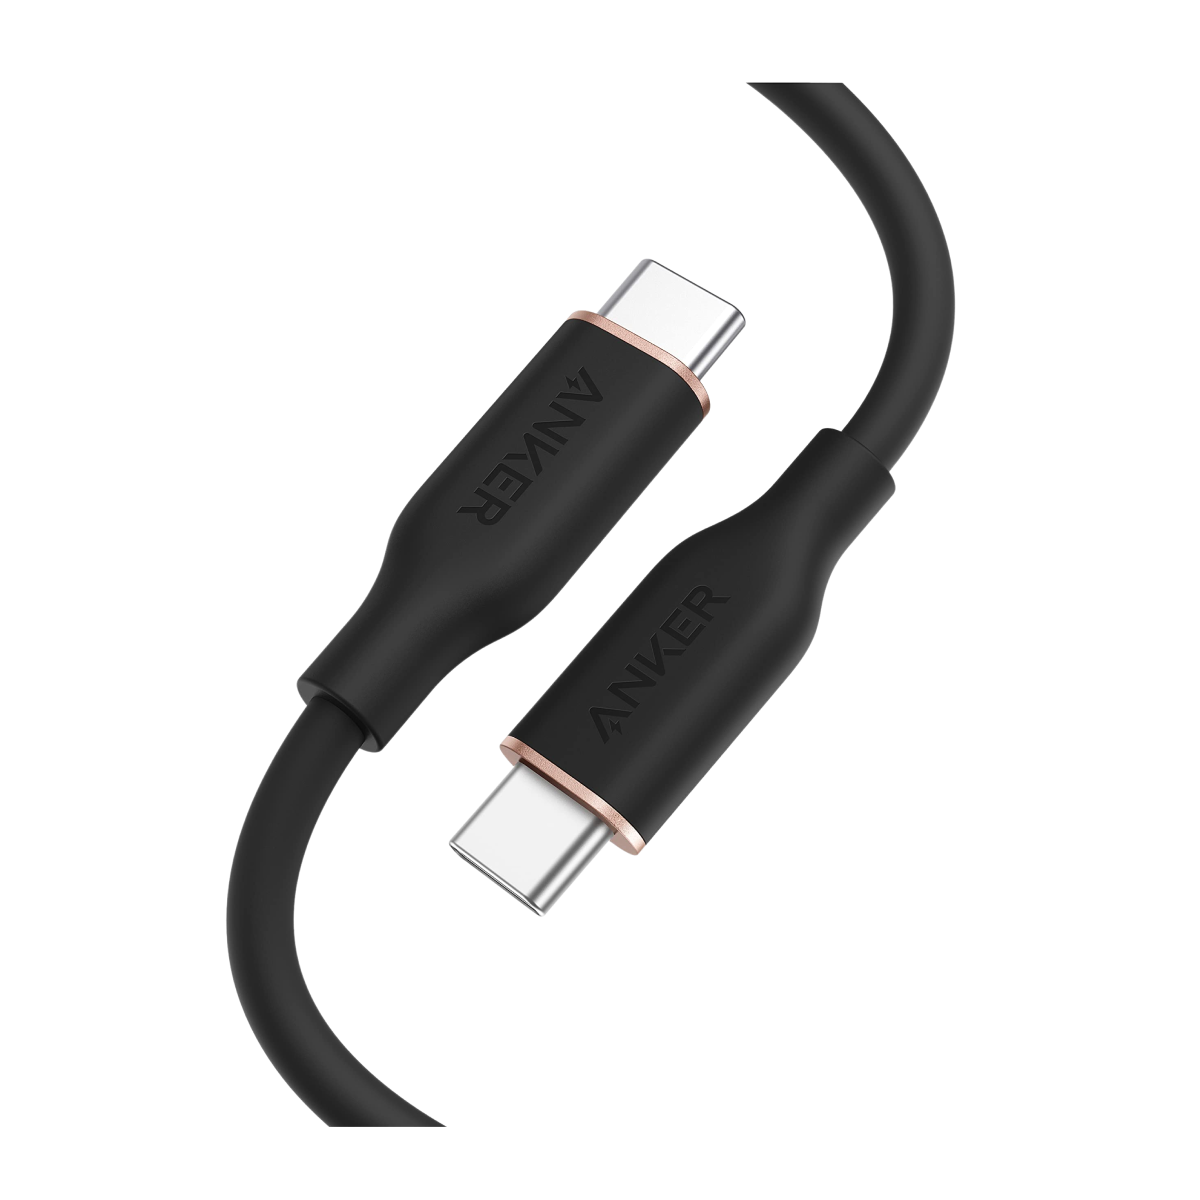 Câbles USB-C - Anker Europe - Anker FR